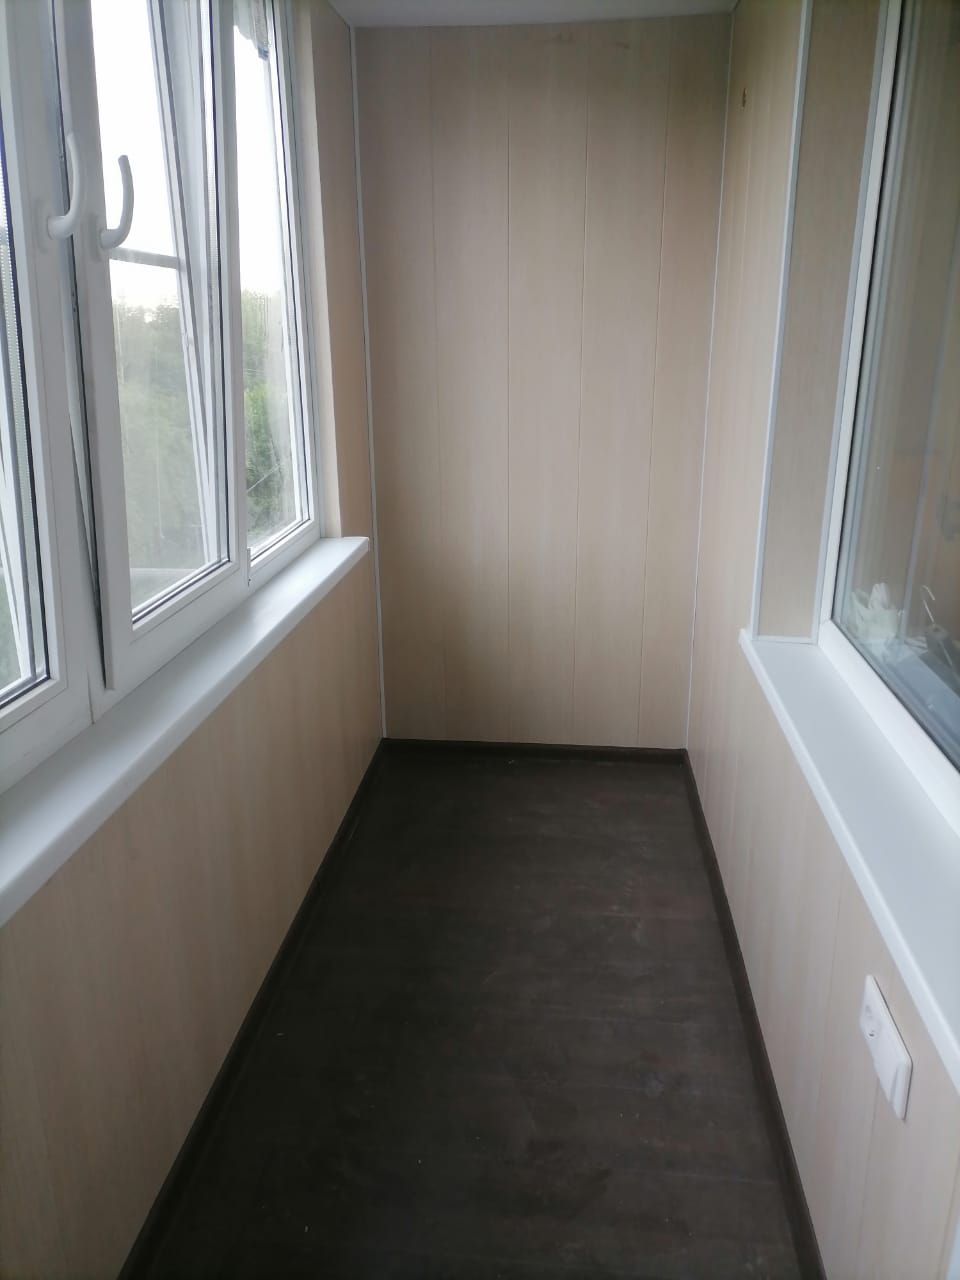 Остекление, внутренняя отделка, утепление, балкона площадью 4,5 м²